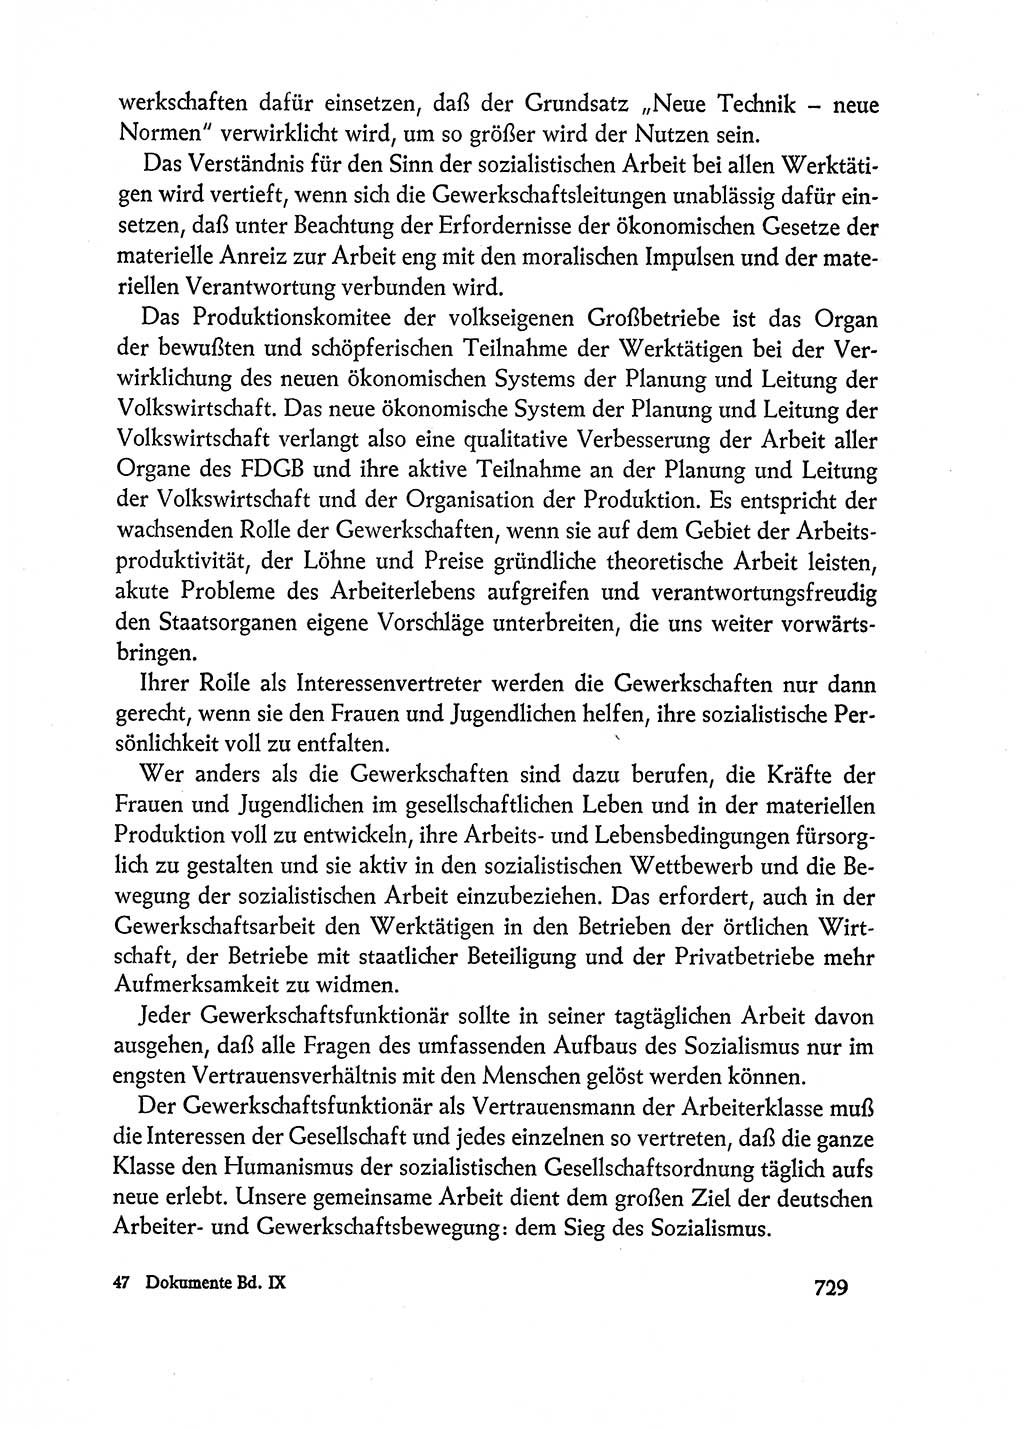 Dokumente der Sozialistischen Einheitspartei Deutschlands (SED) [Deutsche Demokratische Republik (DDR)] 1962-1963, Seite 729 (Dok. SED DDR 1962-1963, S. 729)